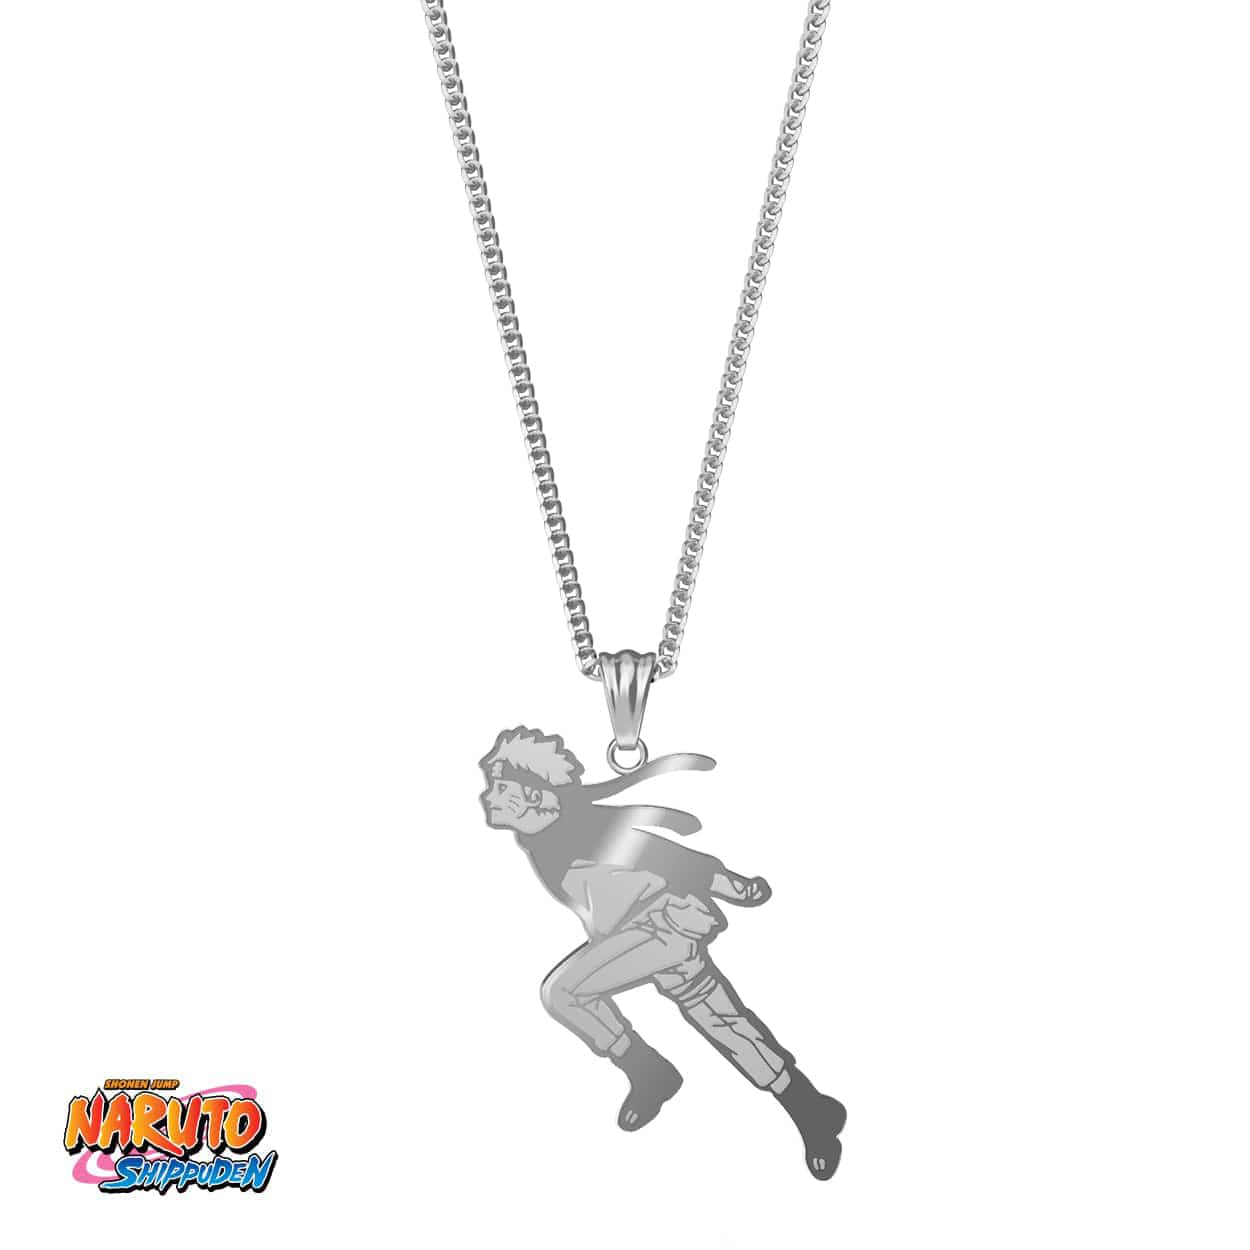 Naruto™ Run Necklace